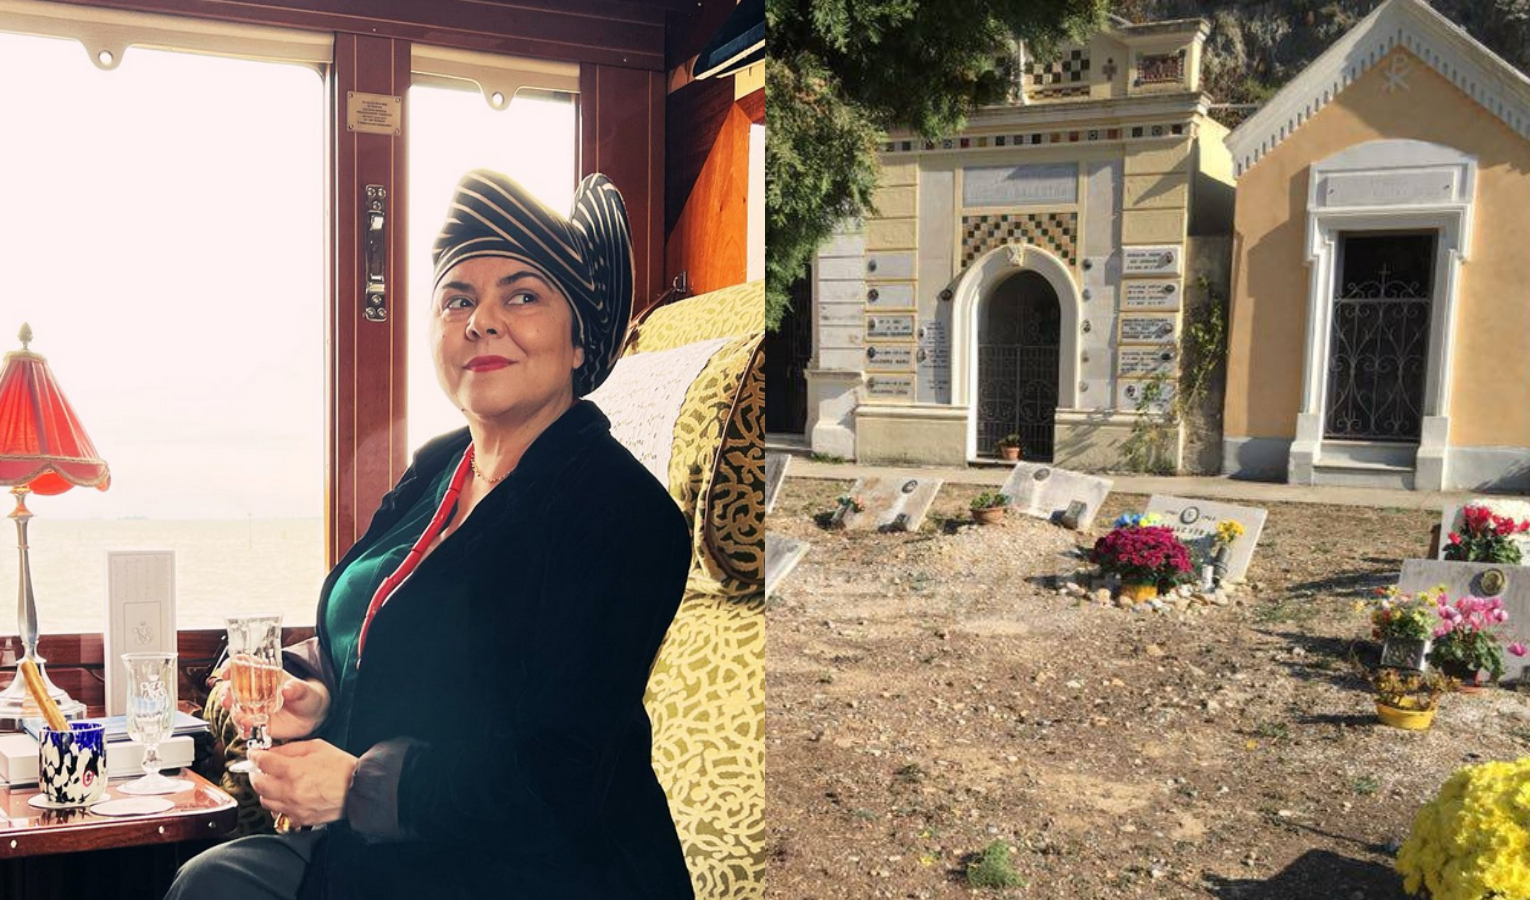 Addio Michela Murgia, l'ultima battaglia contro vigilantes al cimitero di Ventimiglia